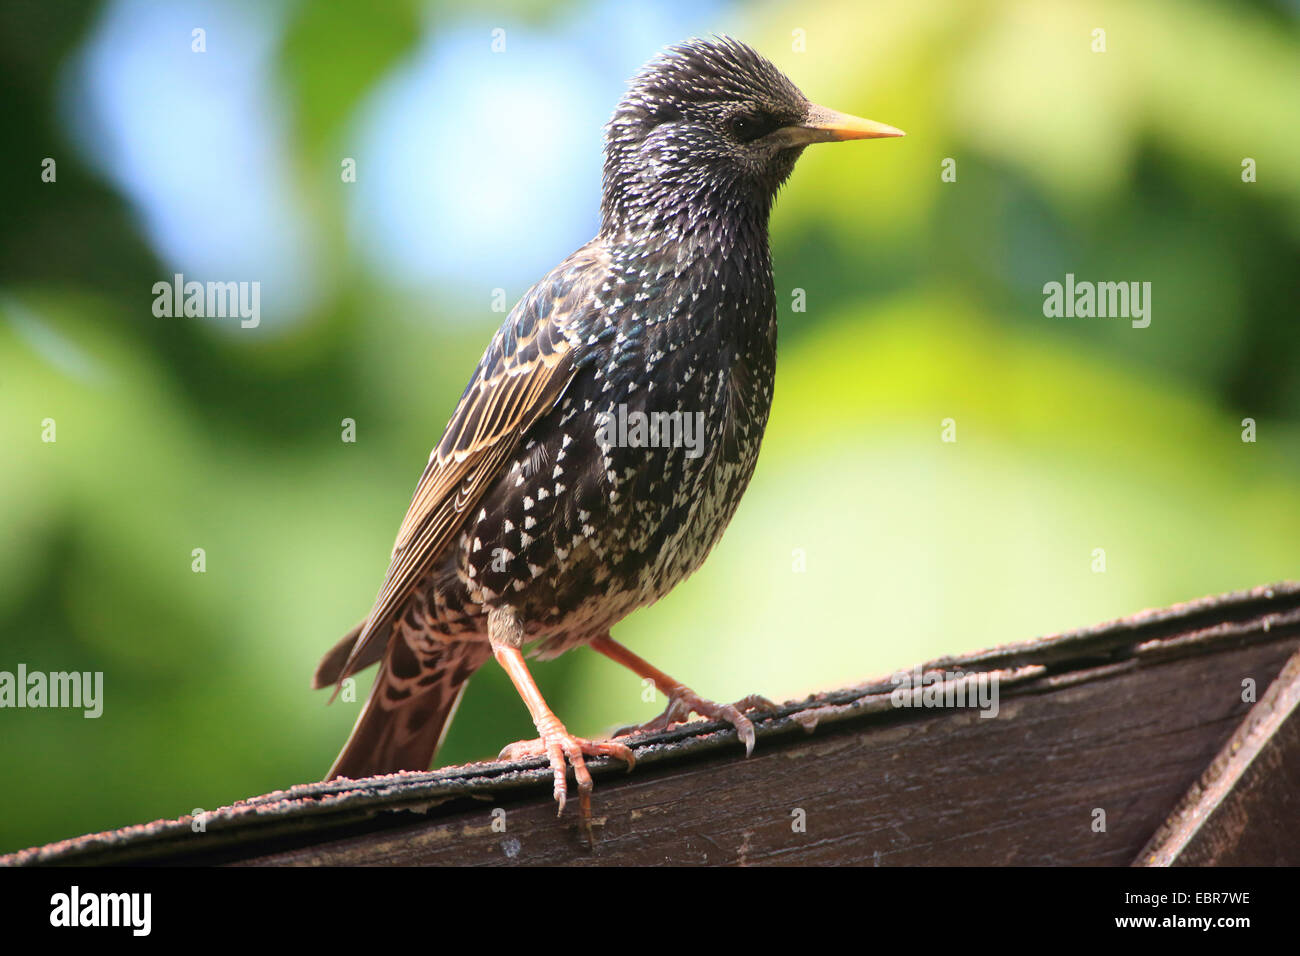 Estornino Pinto (Sturnus vulgaris), Starling en el techo de un arbor, Alemania Foto de stock